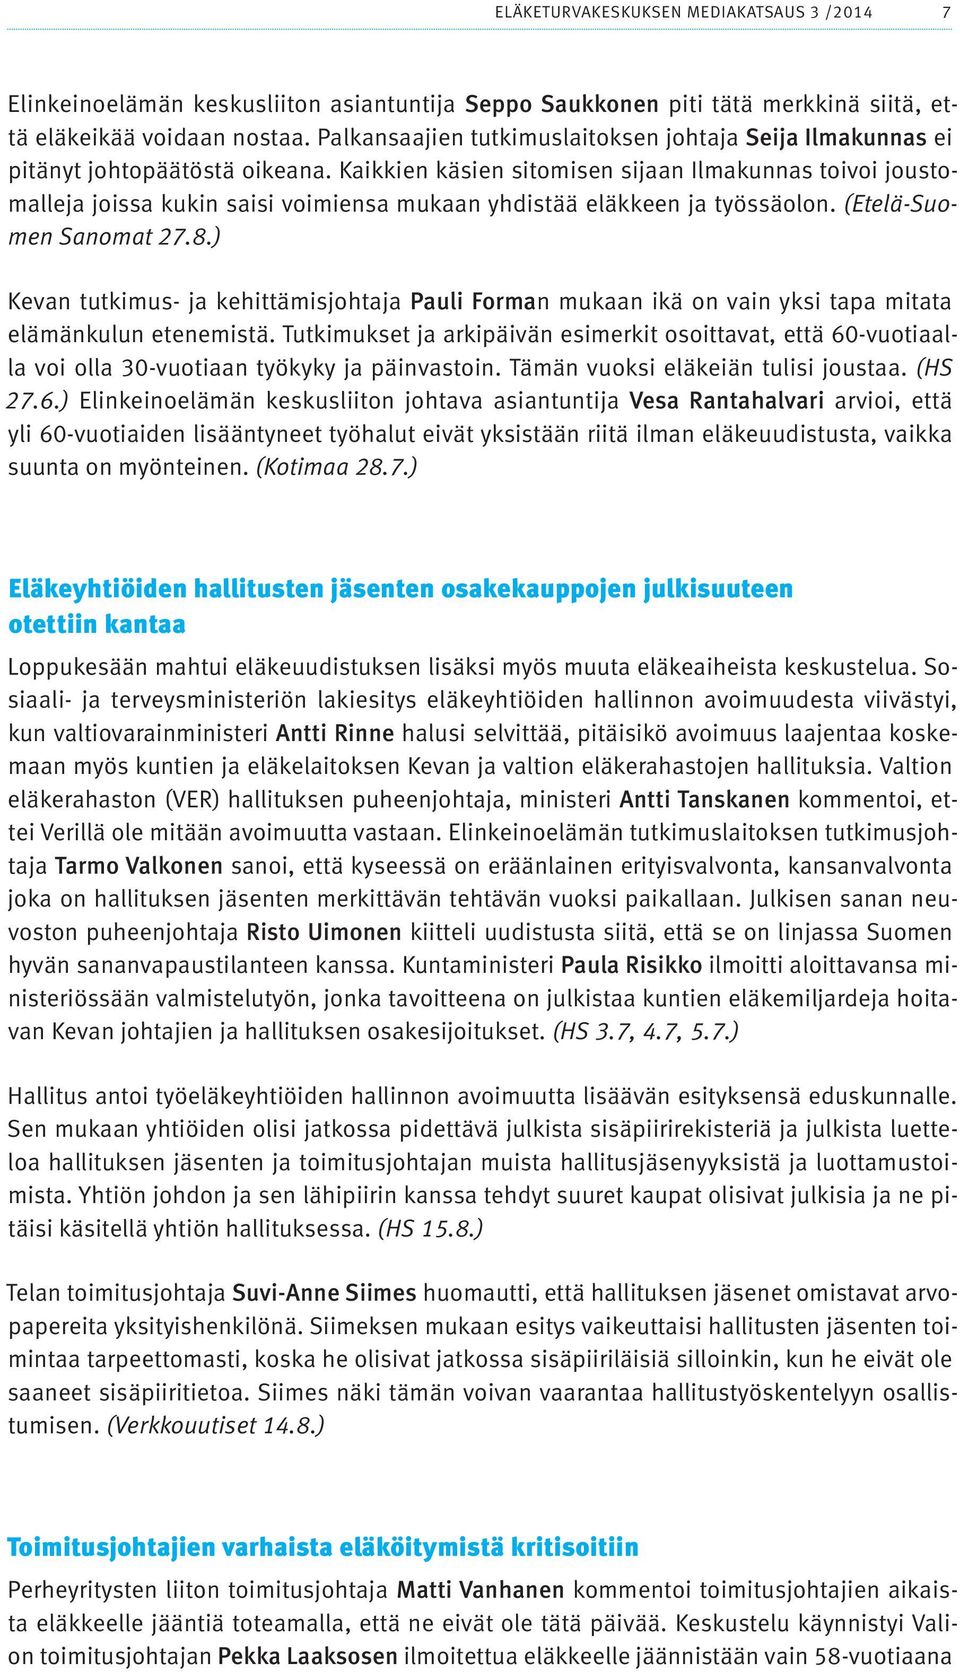 Kaikkien käsien sitomisen sijaan Ilmakunnas toivoi joustomalleja joissa kukin saisi voimiensa mukaan yhdistää eläkkeen ja työssäolon. (Etelä-Suomen Sanomat 27.8.